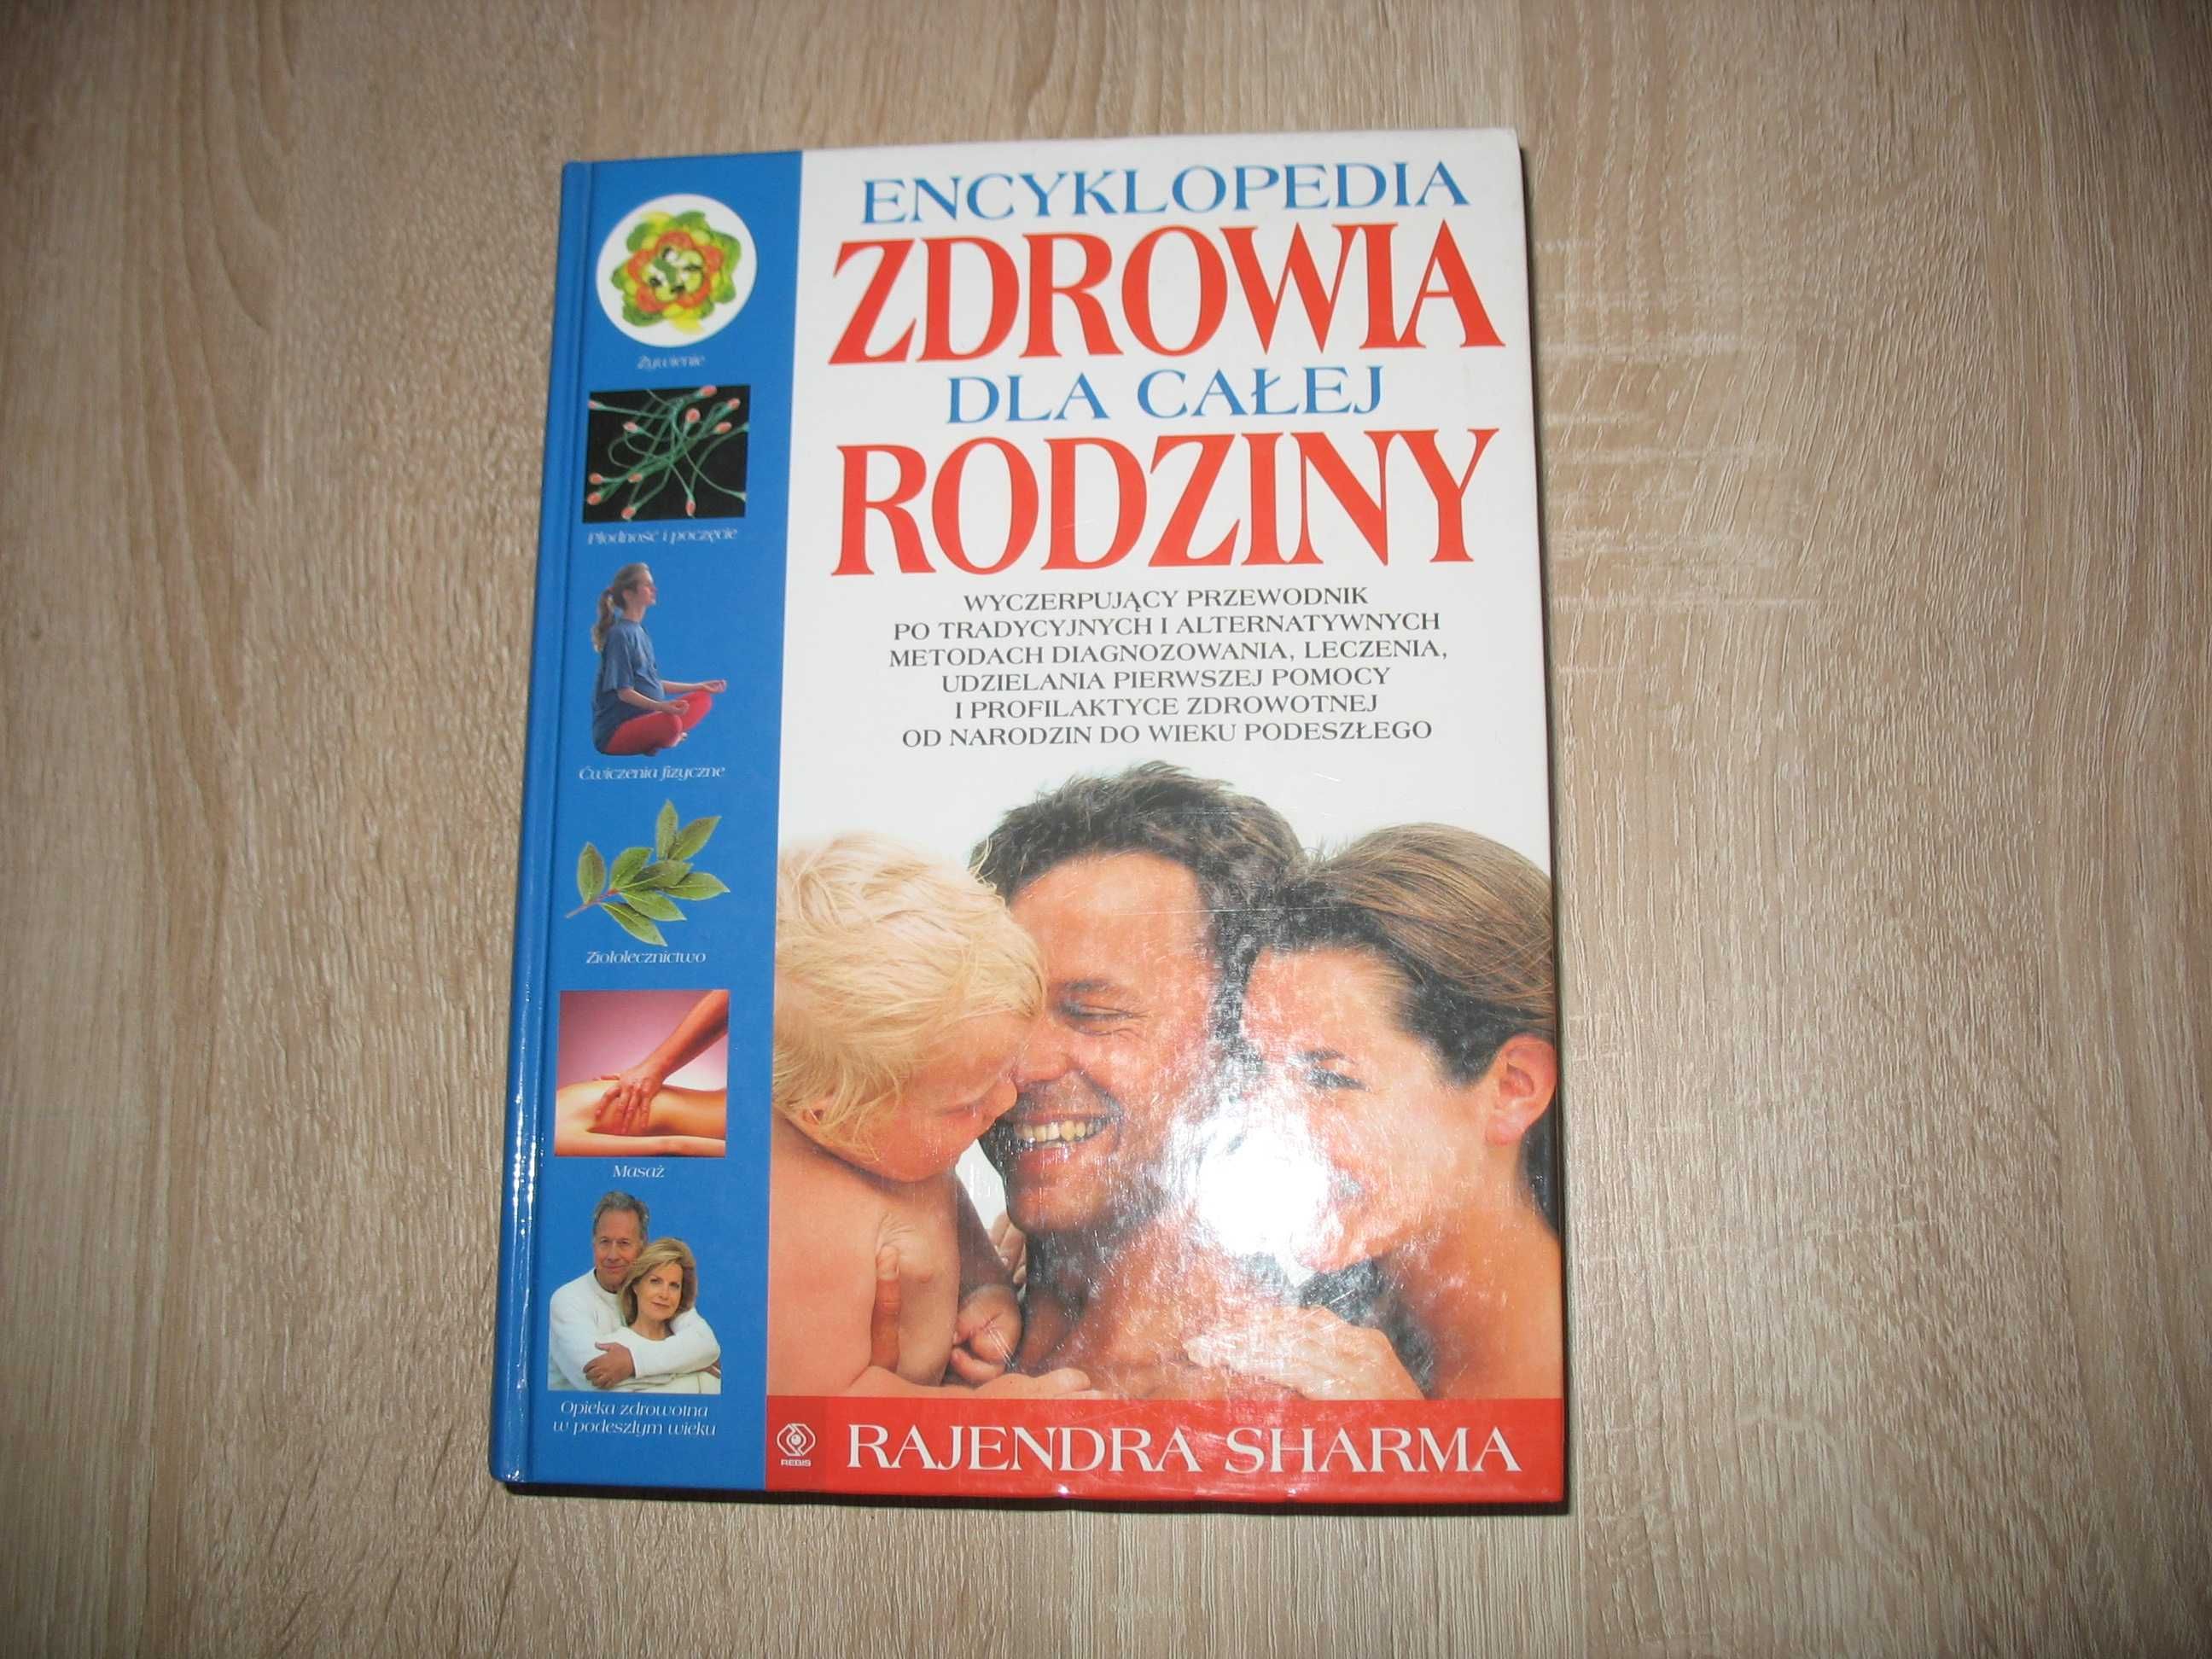 Książka "Encyklopedia Zdrowia" - nowa.